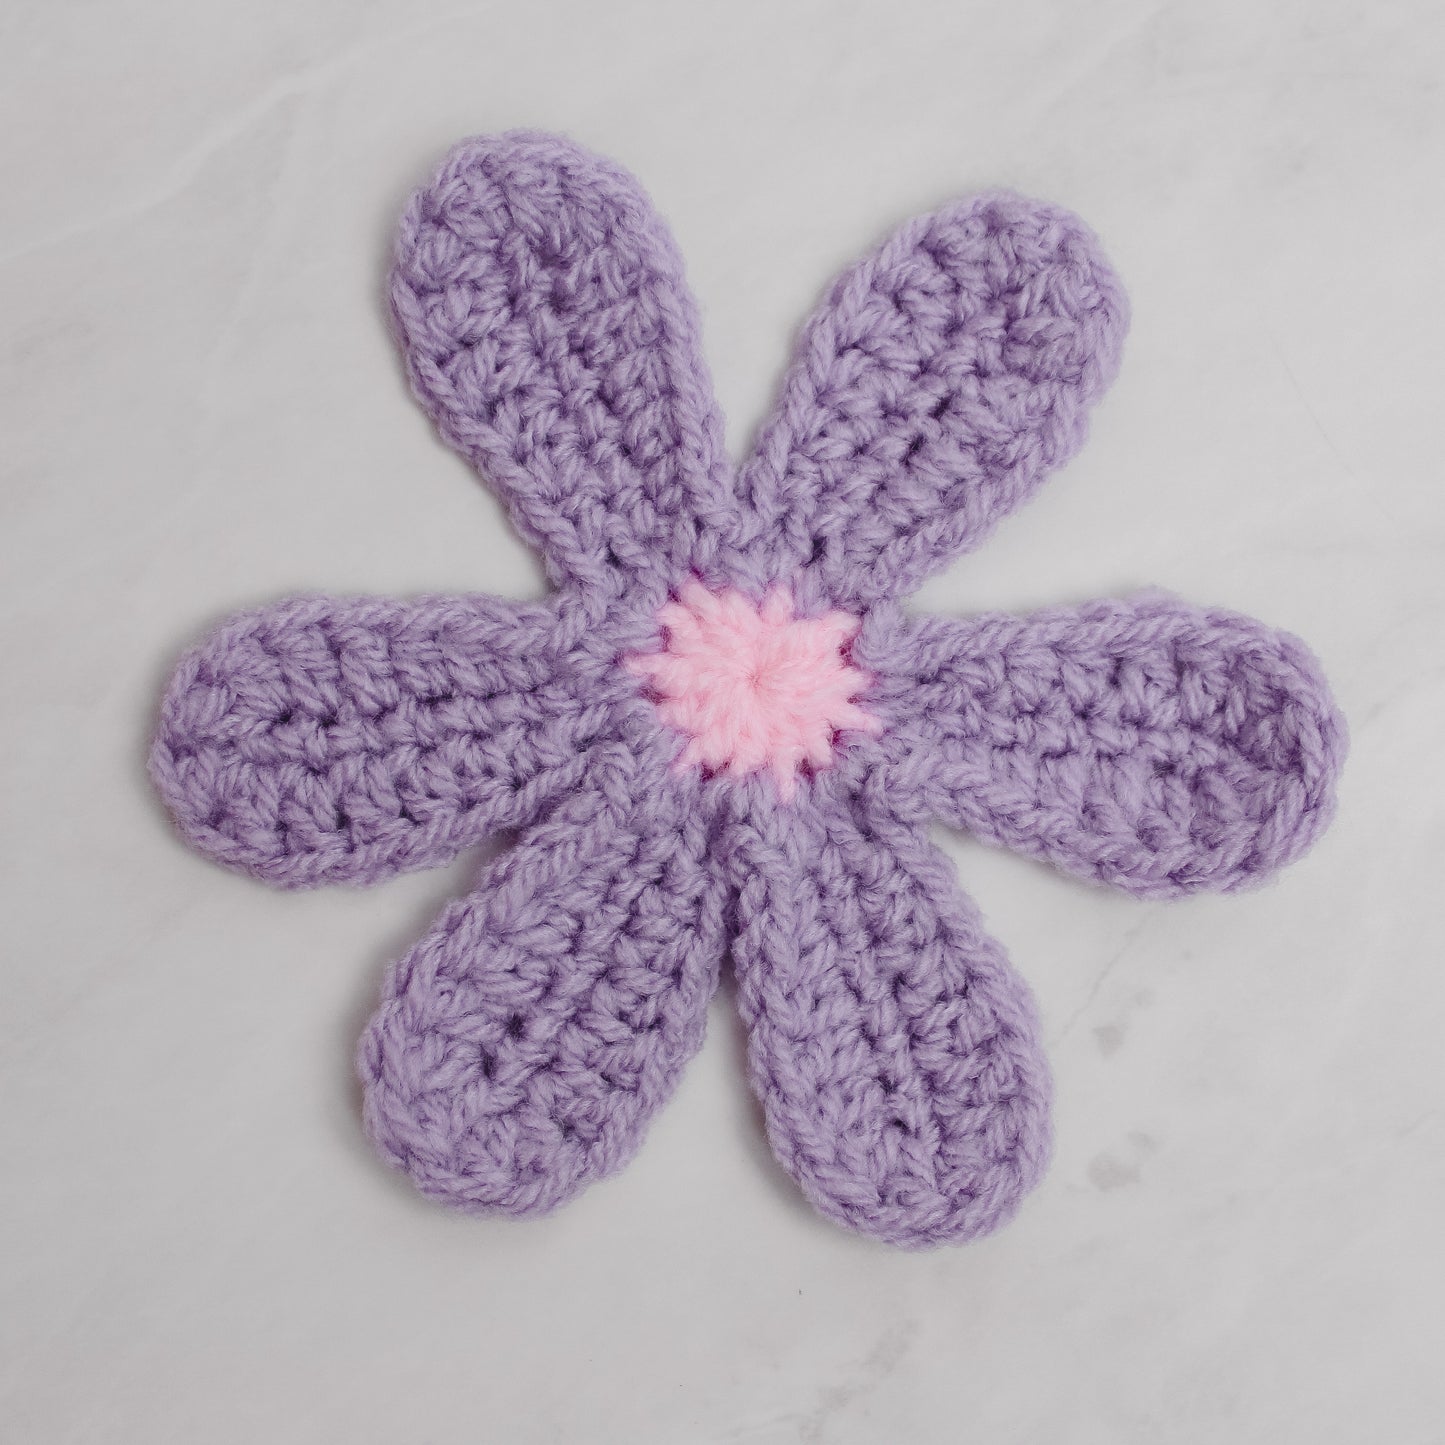 Crochet Retro Flower Written Pattern, Groovy Crochet Flower Pattern by Brunaticality